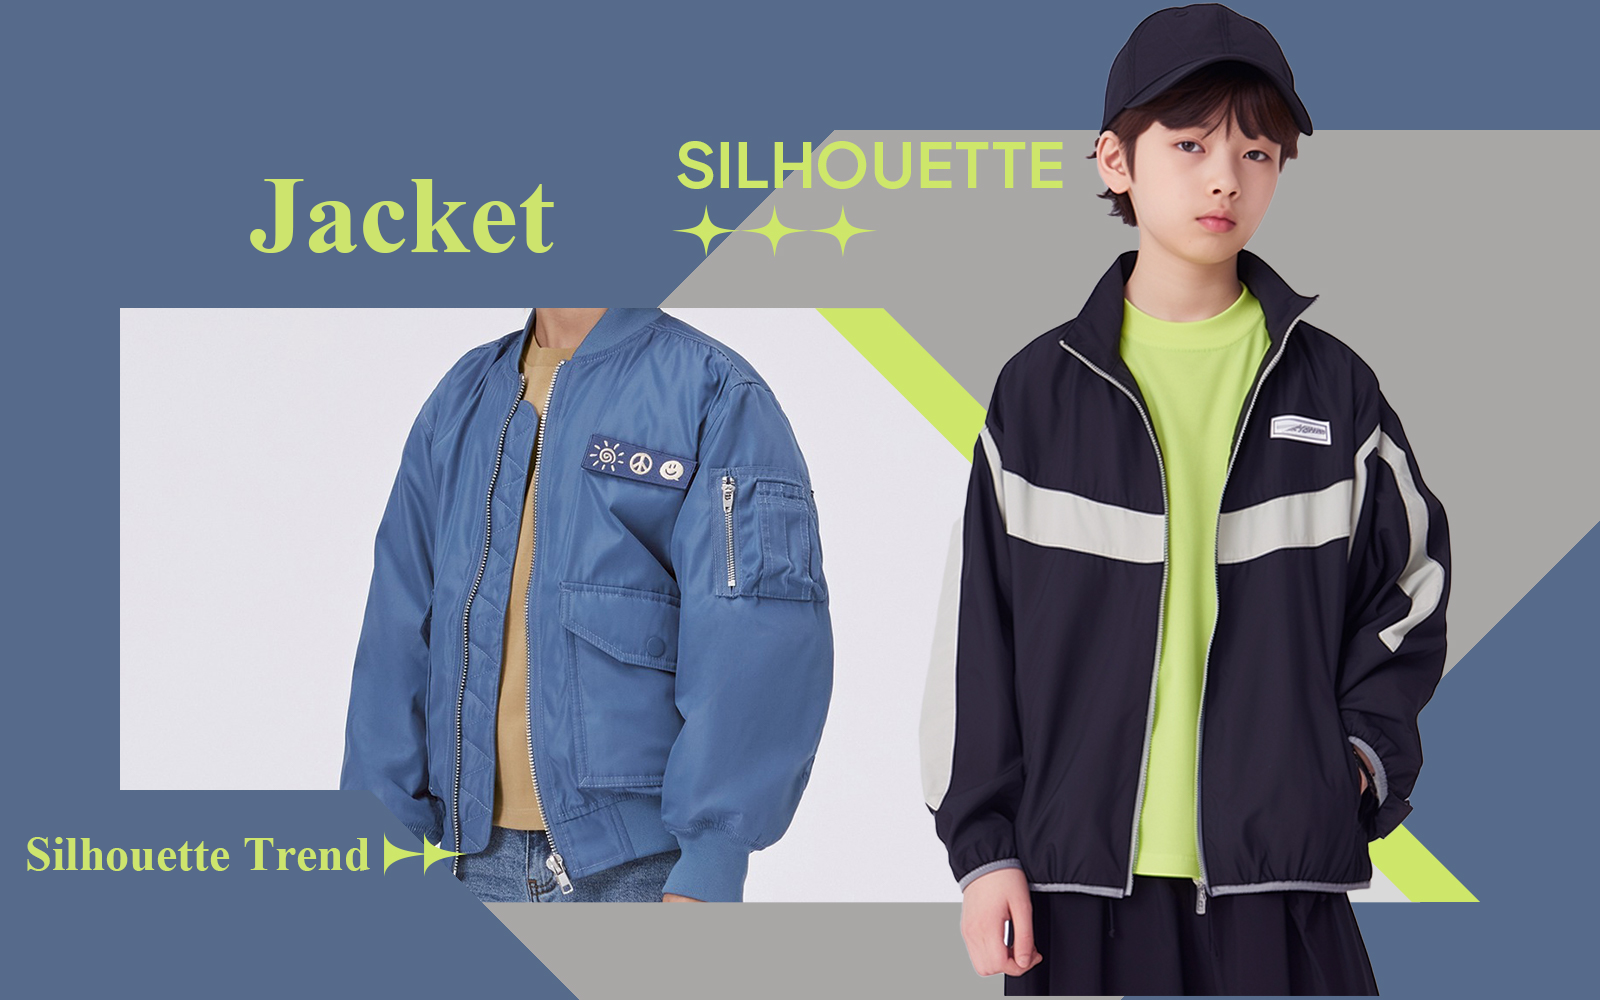 Jacket -- The Silhouette Trend for Boyswear